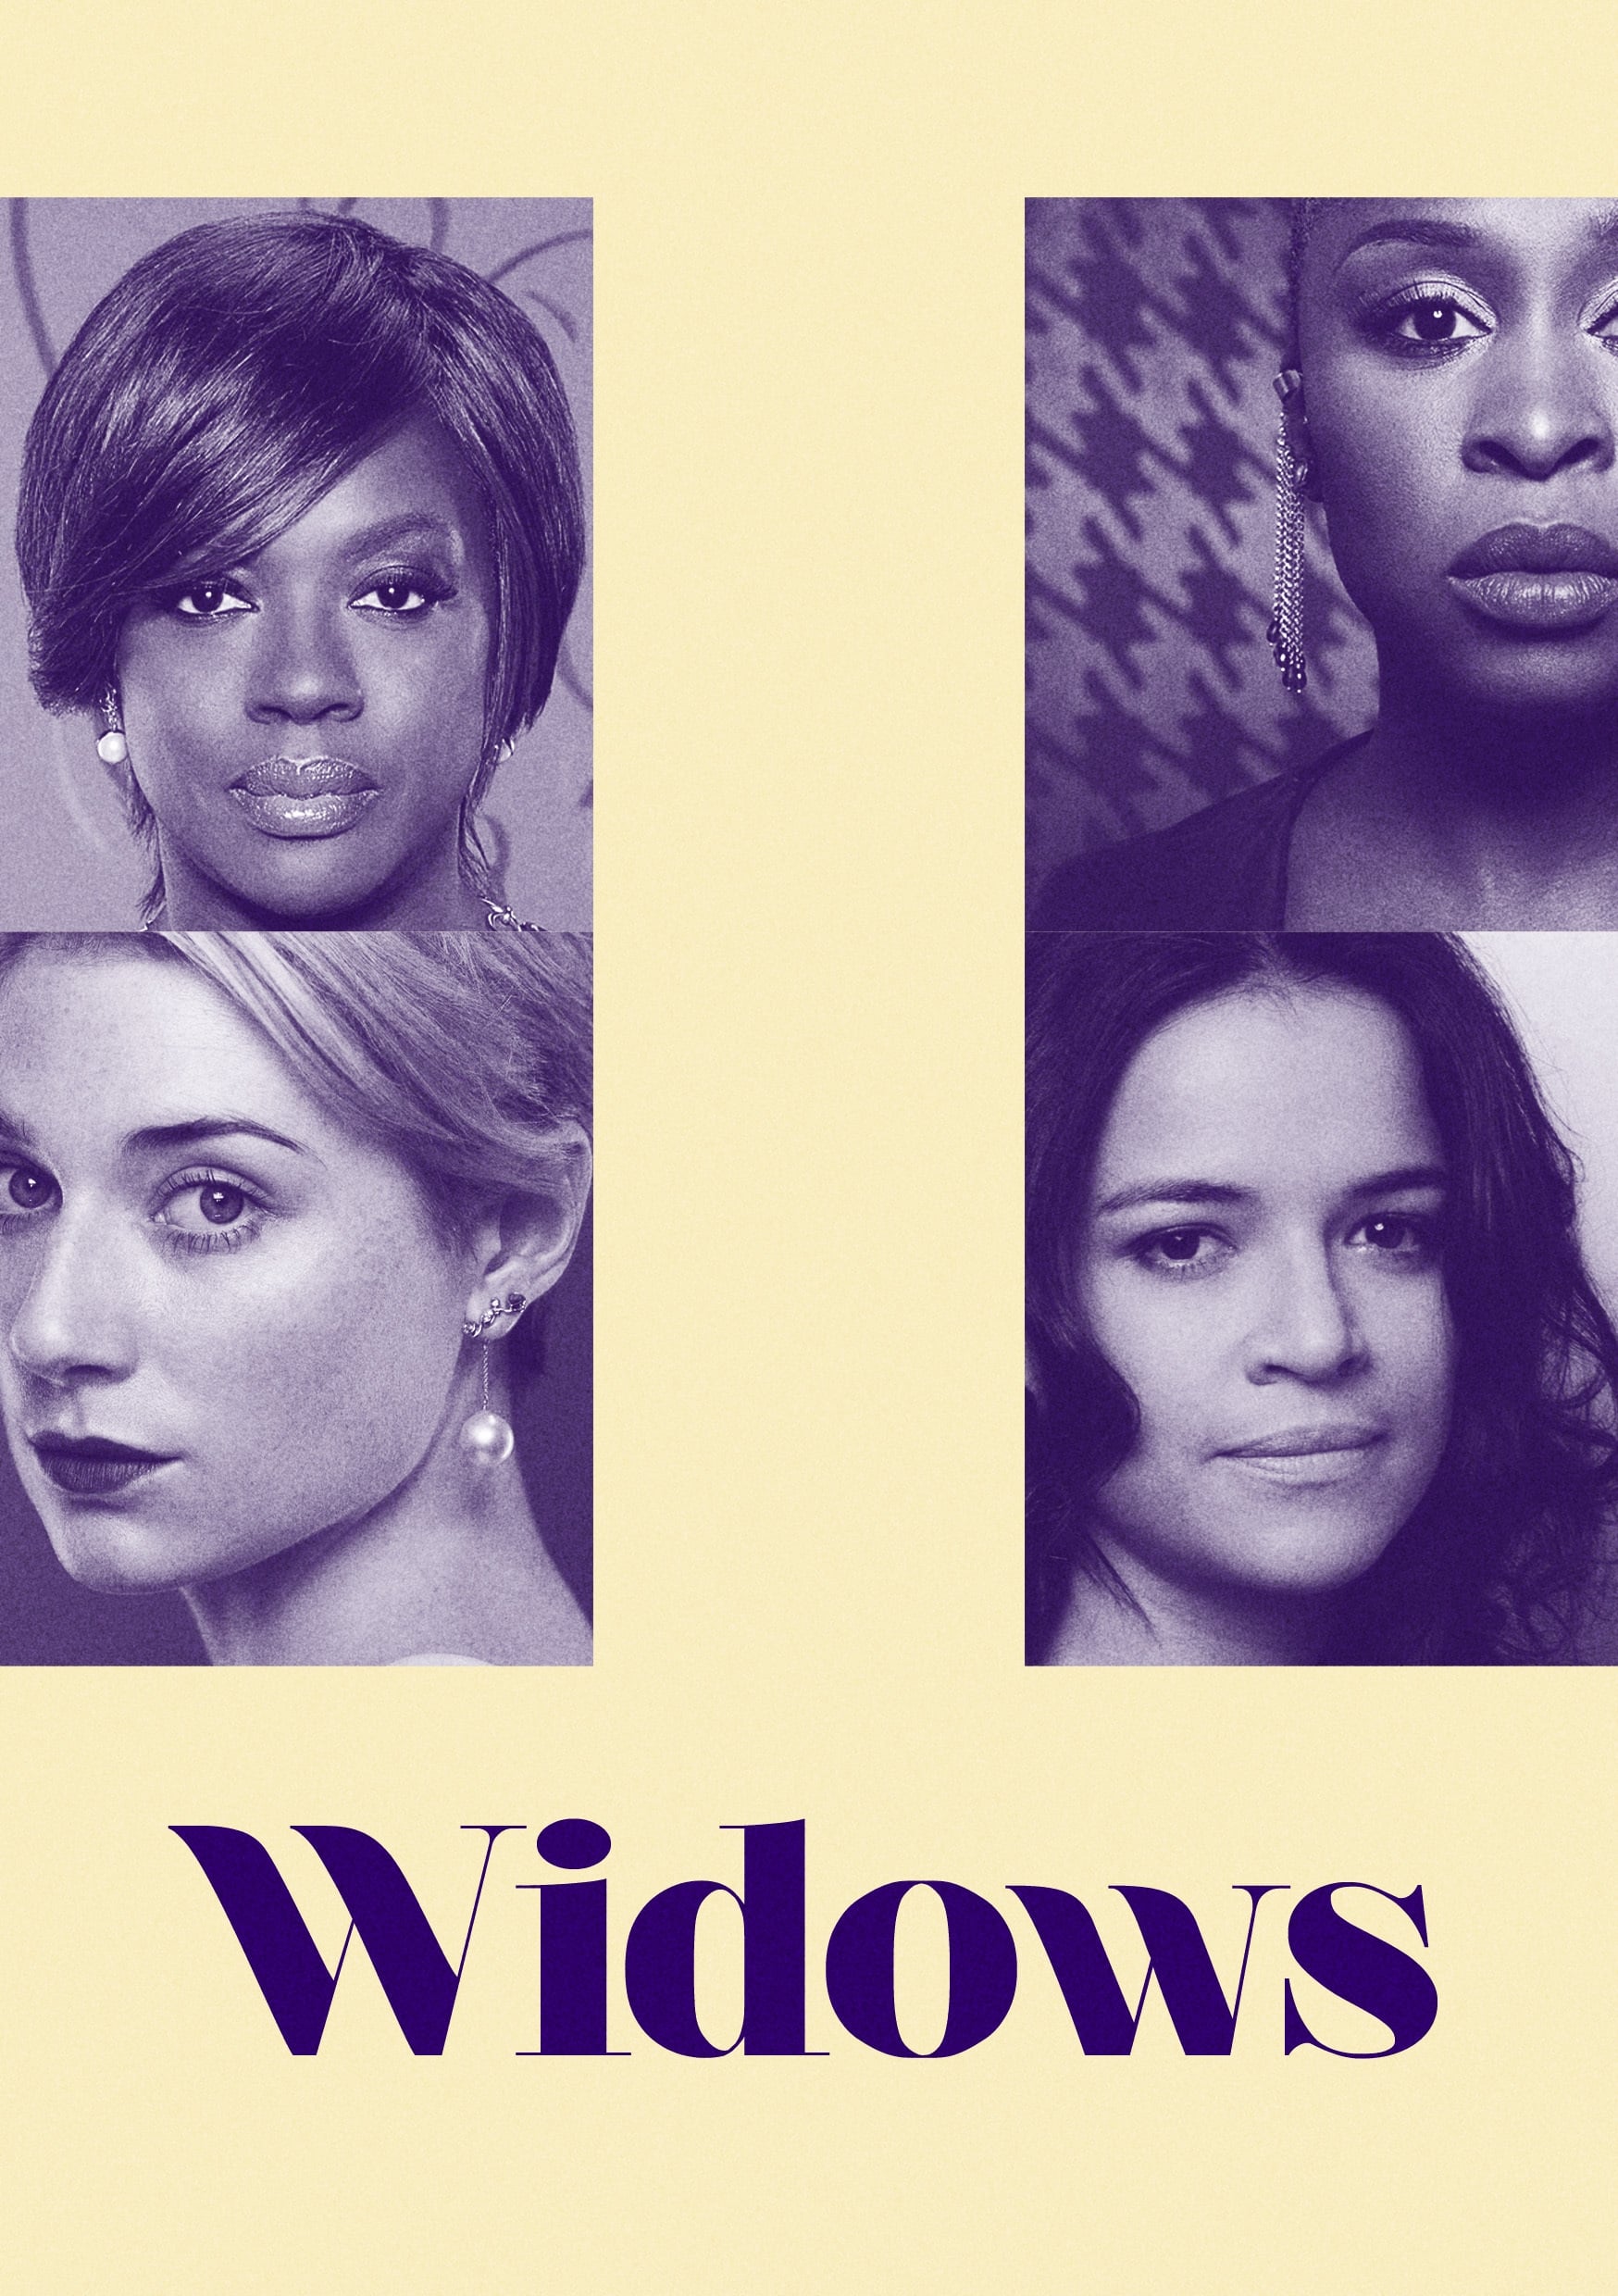 2018 Widows